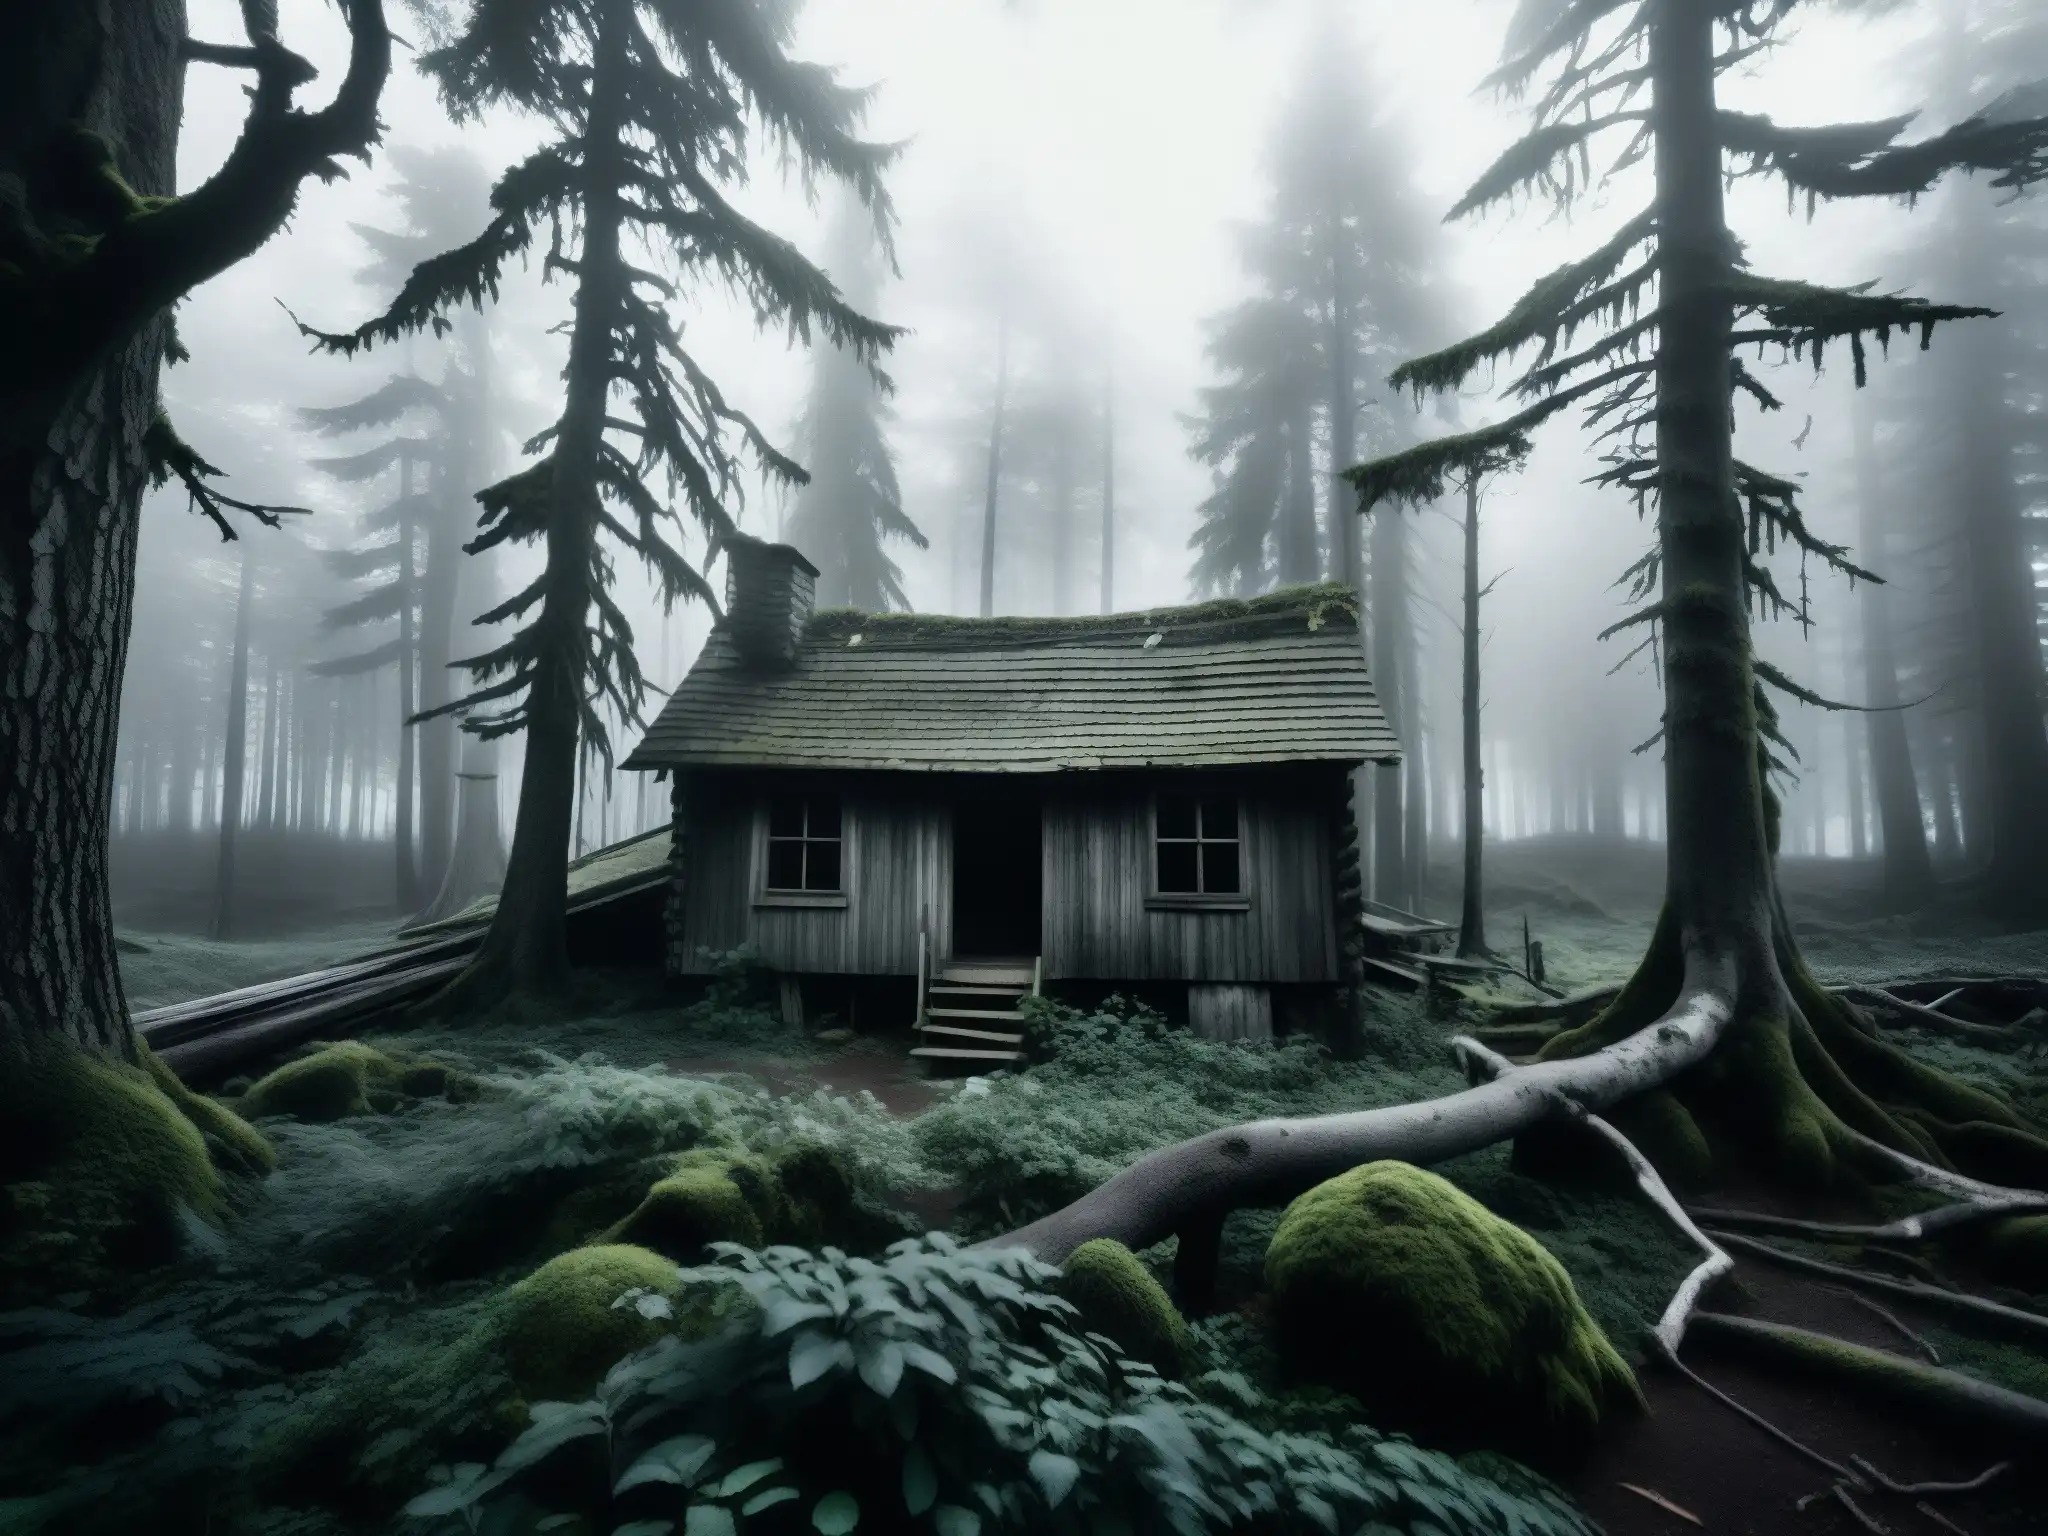 Un bosque denso y misterioso con una cabaña dilapidada, evocando la histeria colectiva de la leyenda de la bruja Blair